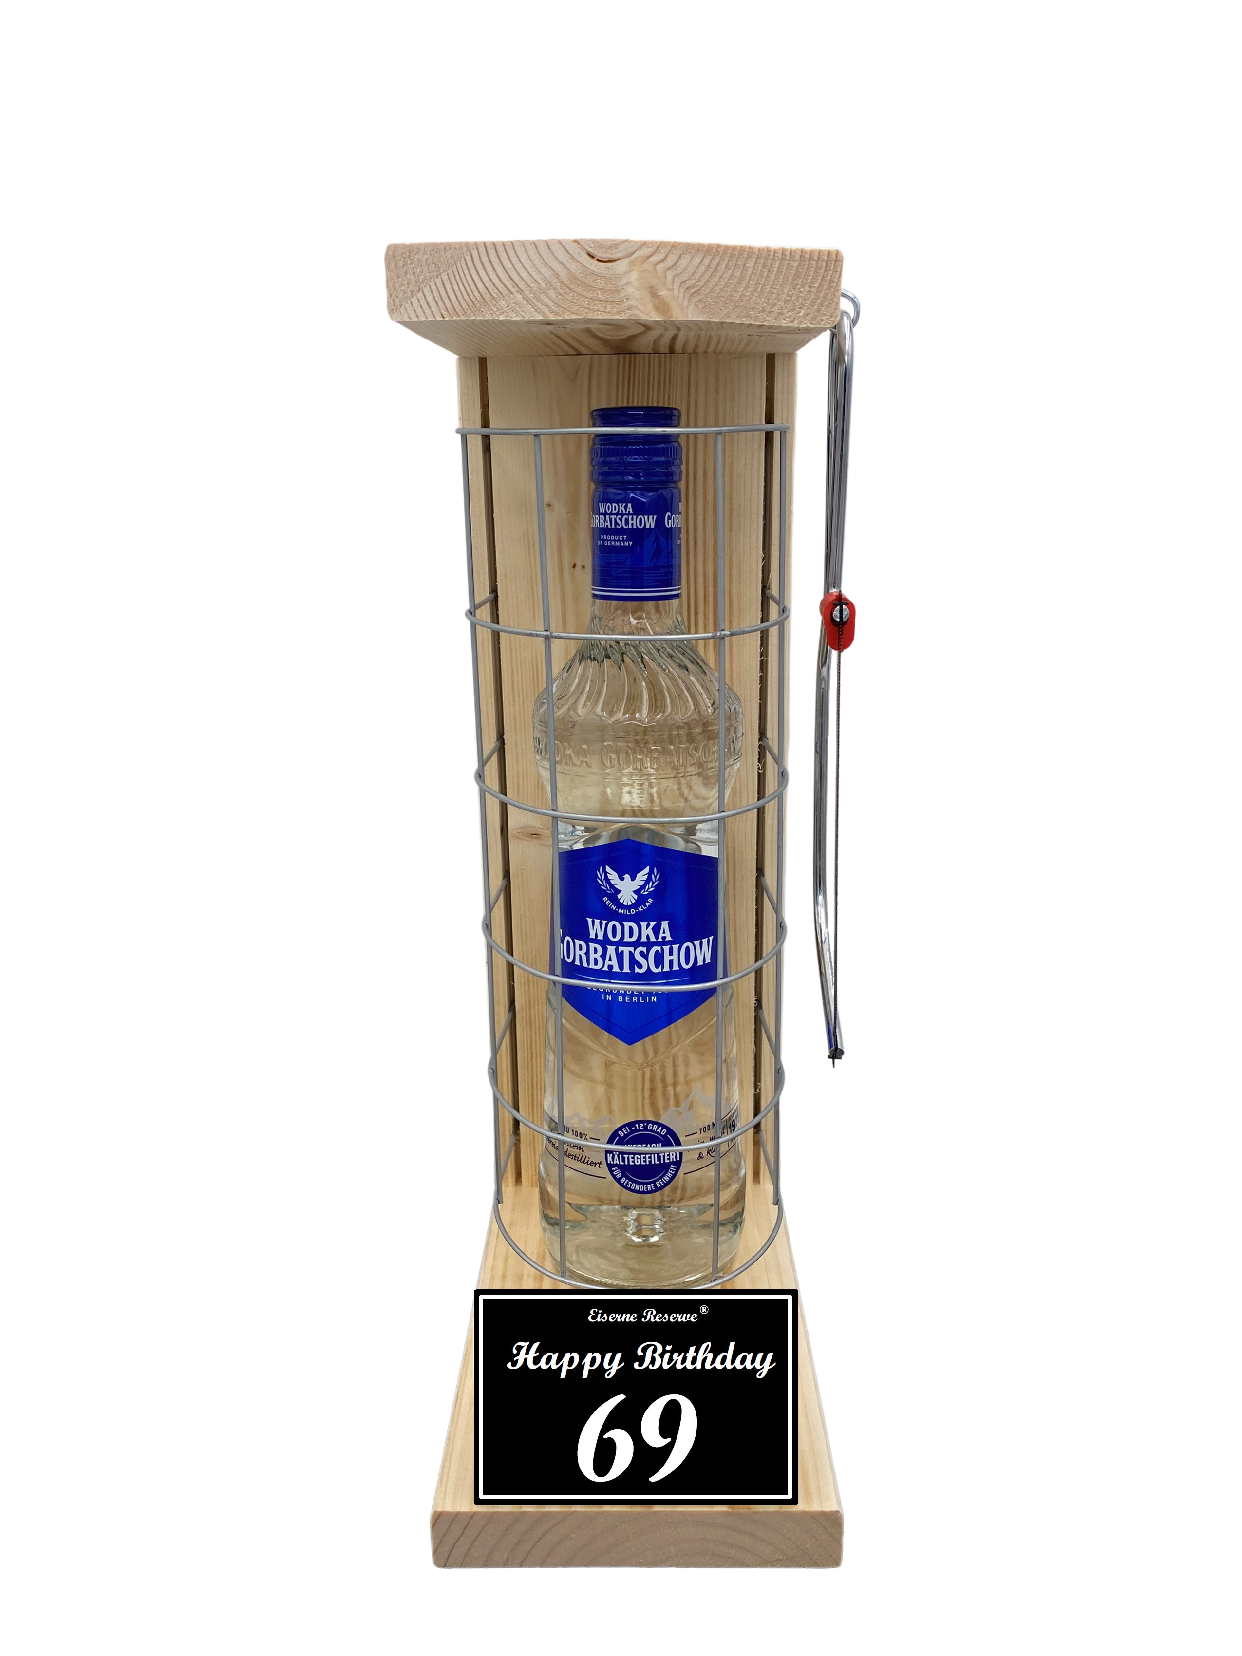 Wodka Geschenk zum 69 Geburtstag - Eiserne Reserve Gitterkäfig